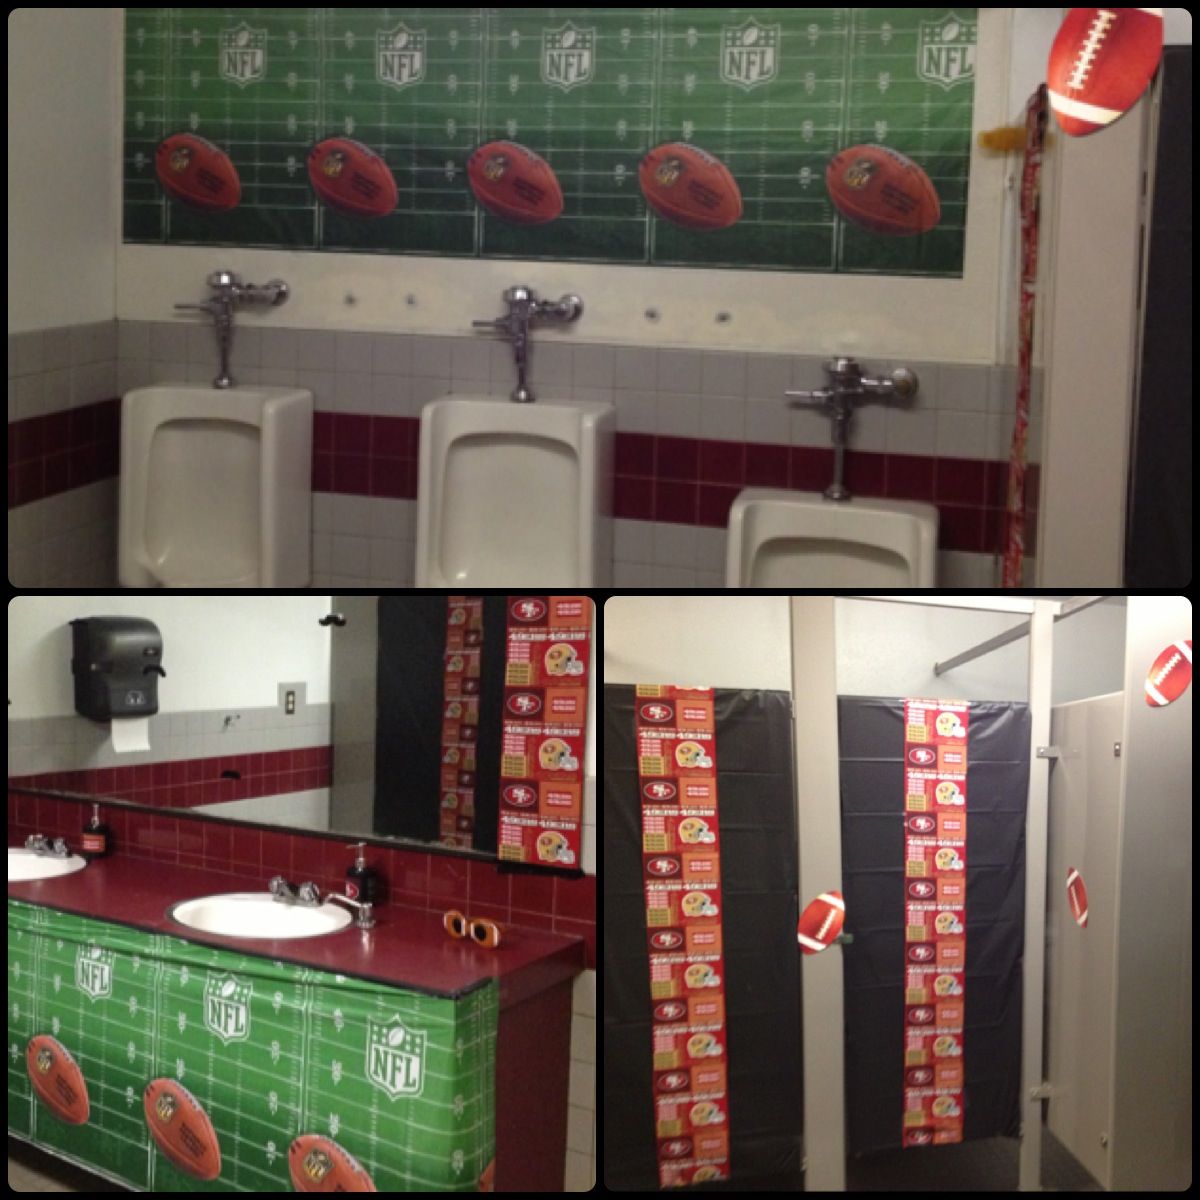 Football themed bathroom 49ers! Bathroom decor, Kid bathroom decor